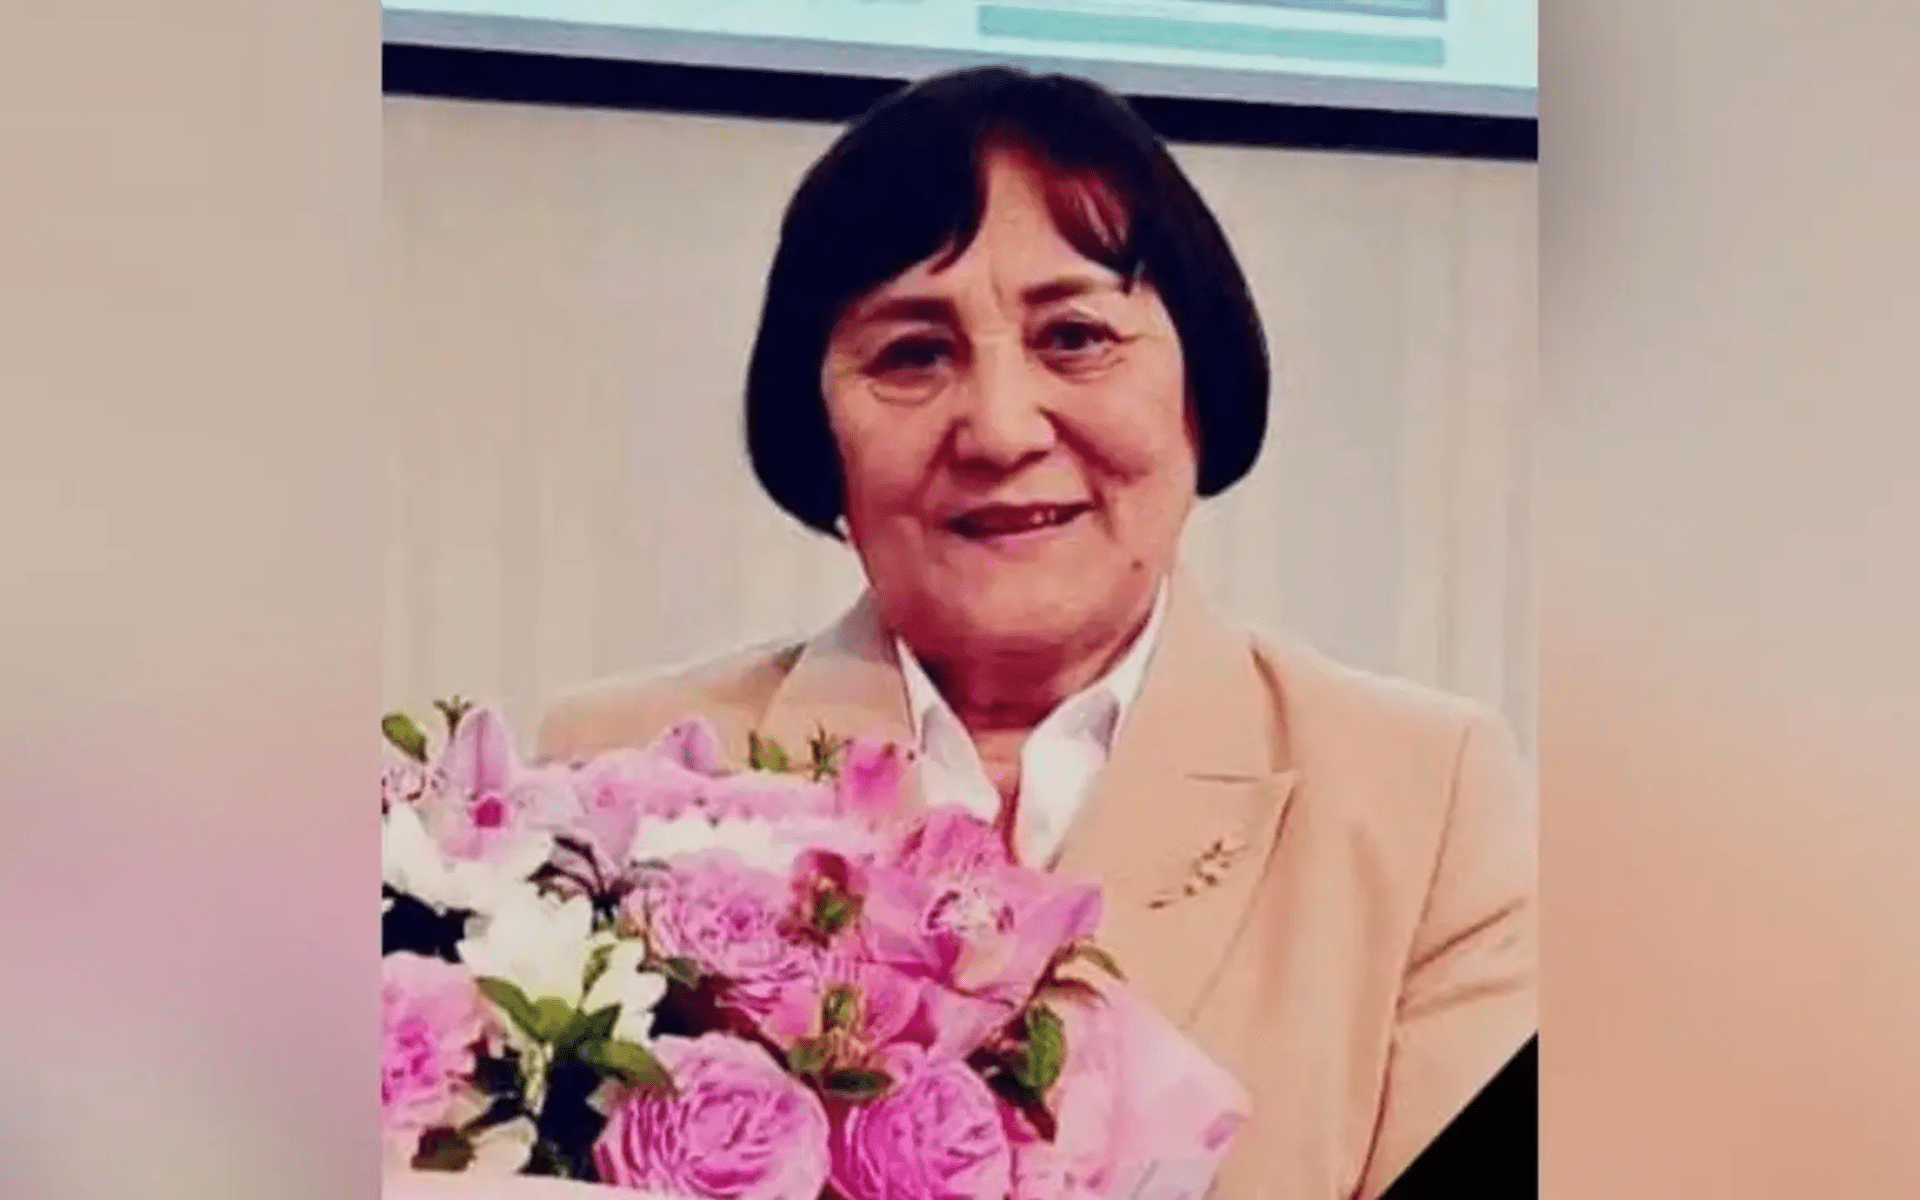 Ушла из жизни основатель онкогематологической службы Казахстана Кулян Омарова